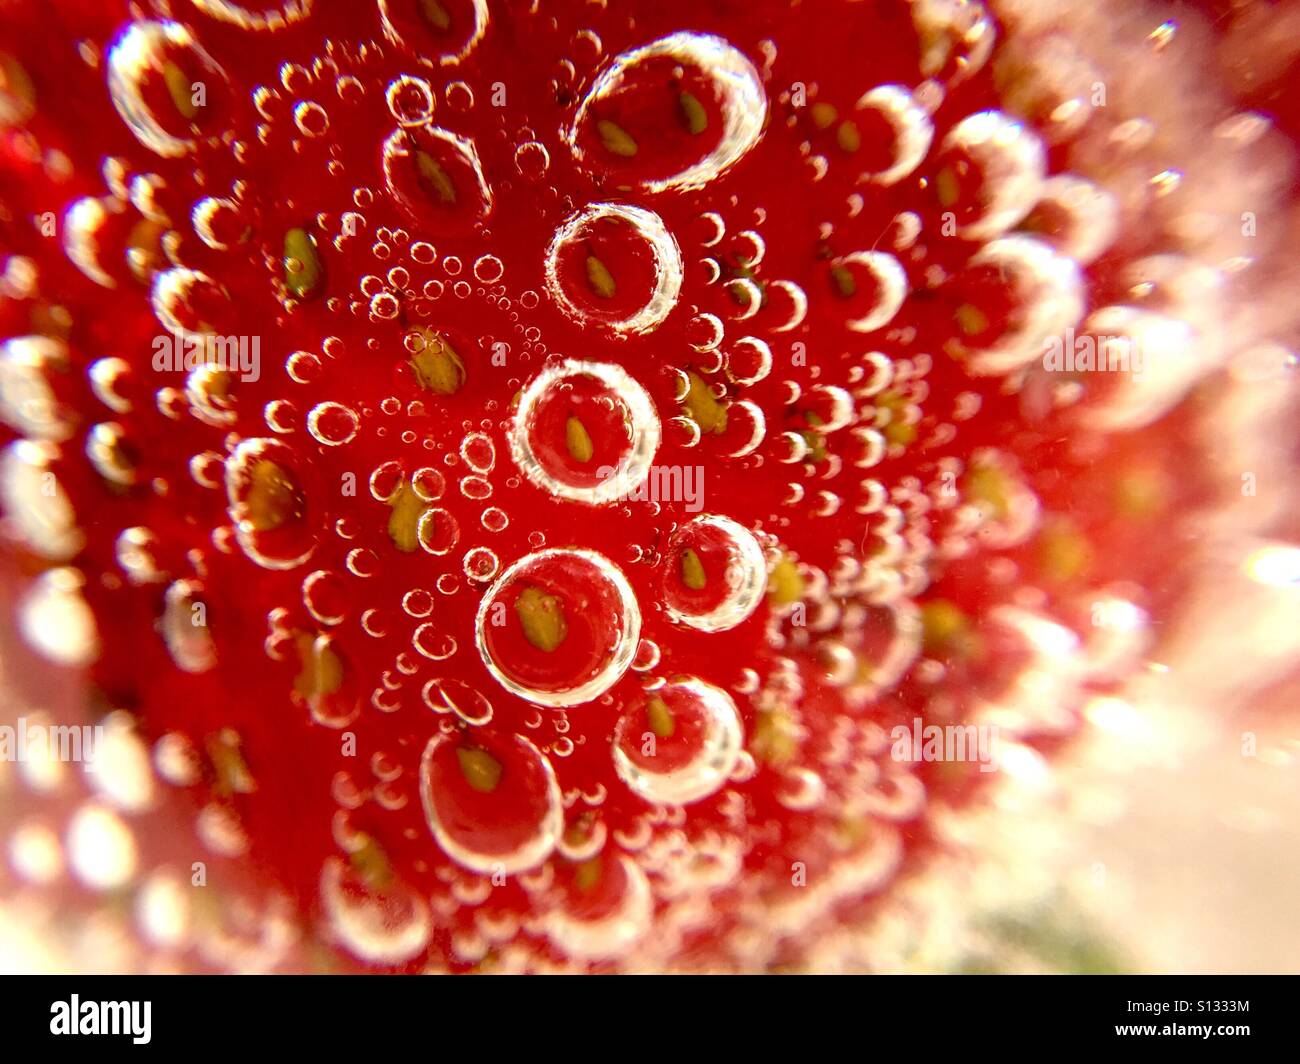 Strawberry bubbly Stock Photo